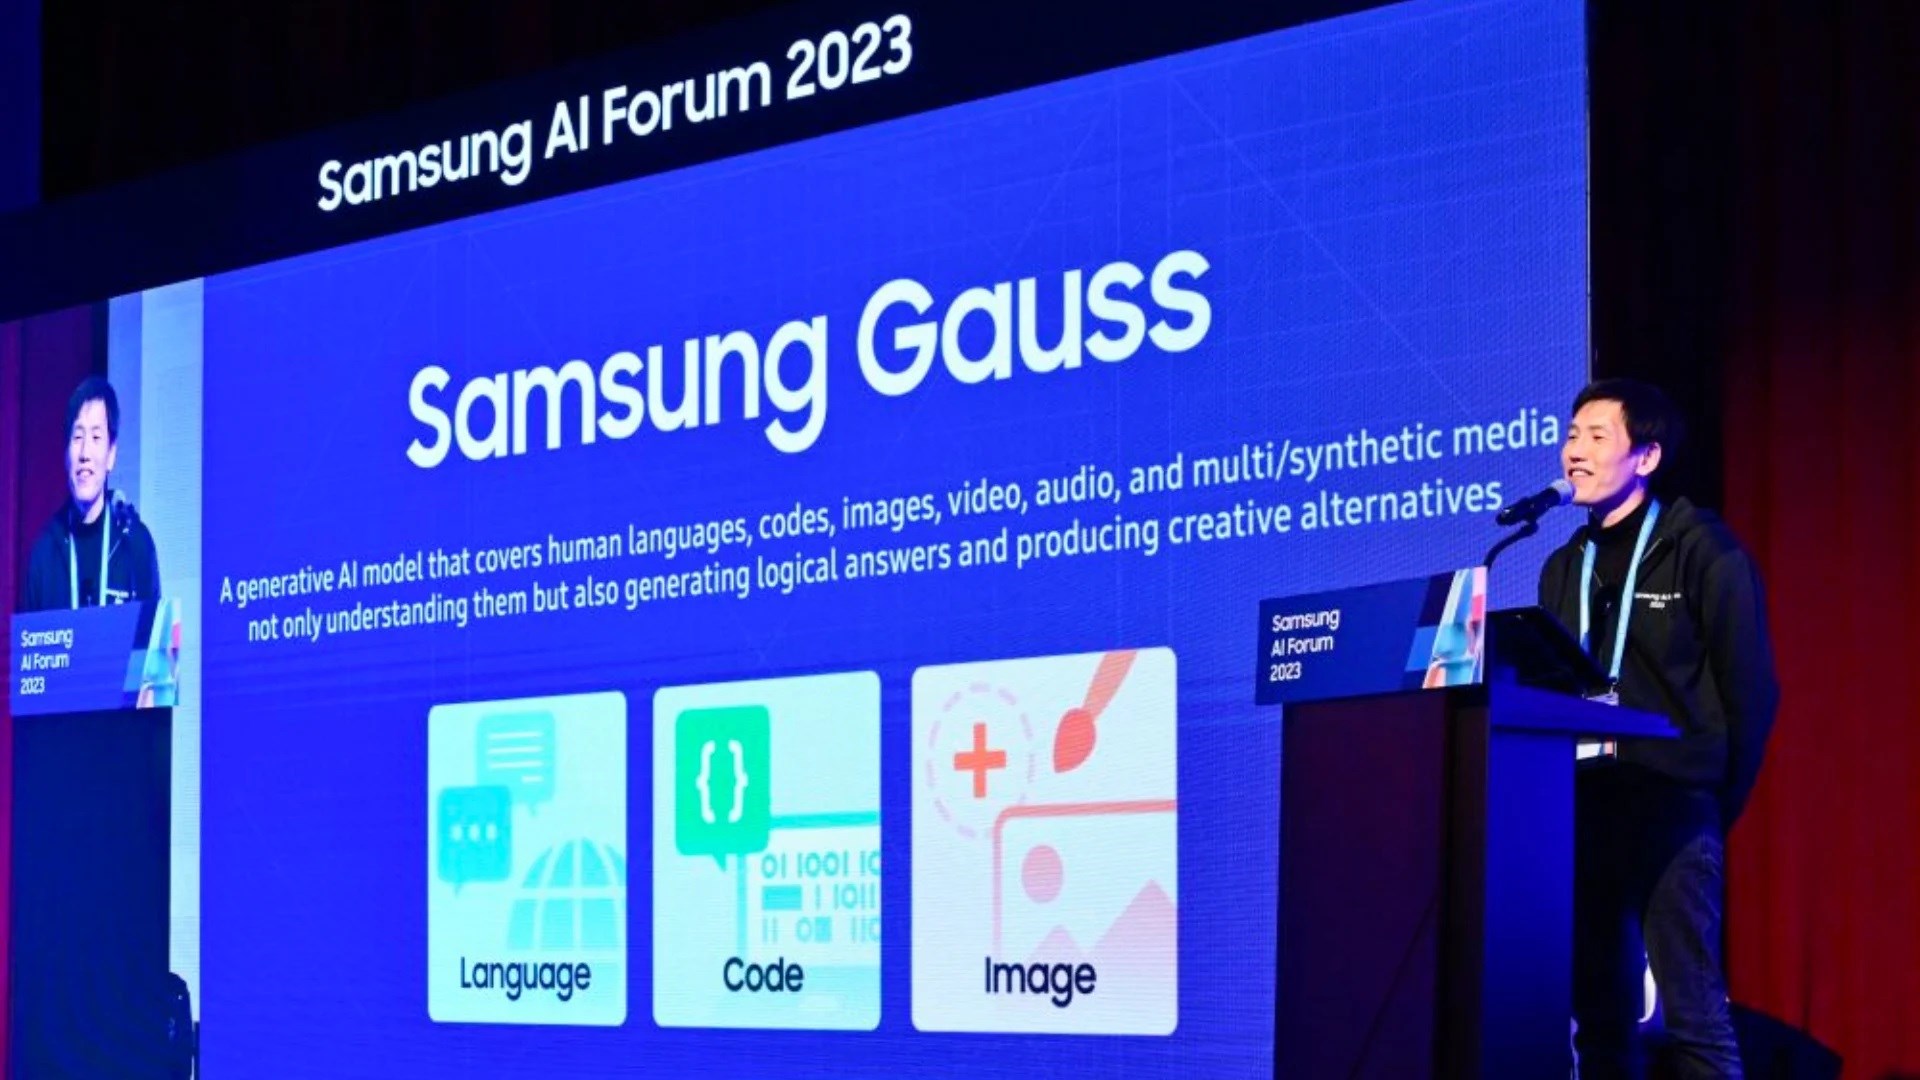 Yapay zeka modeli Samsung Gauss tanıtıldı: Galaxy S24’te olabilir